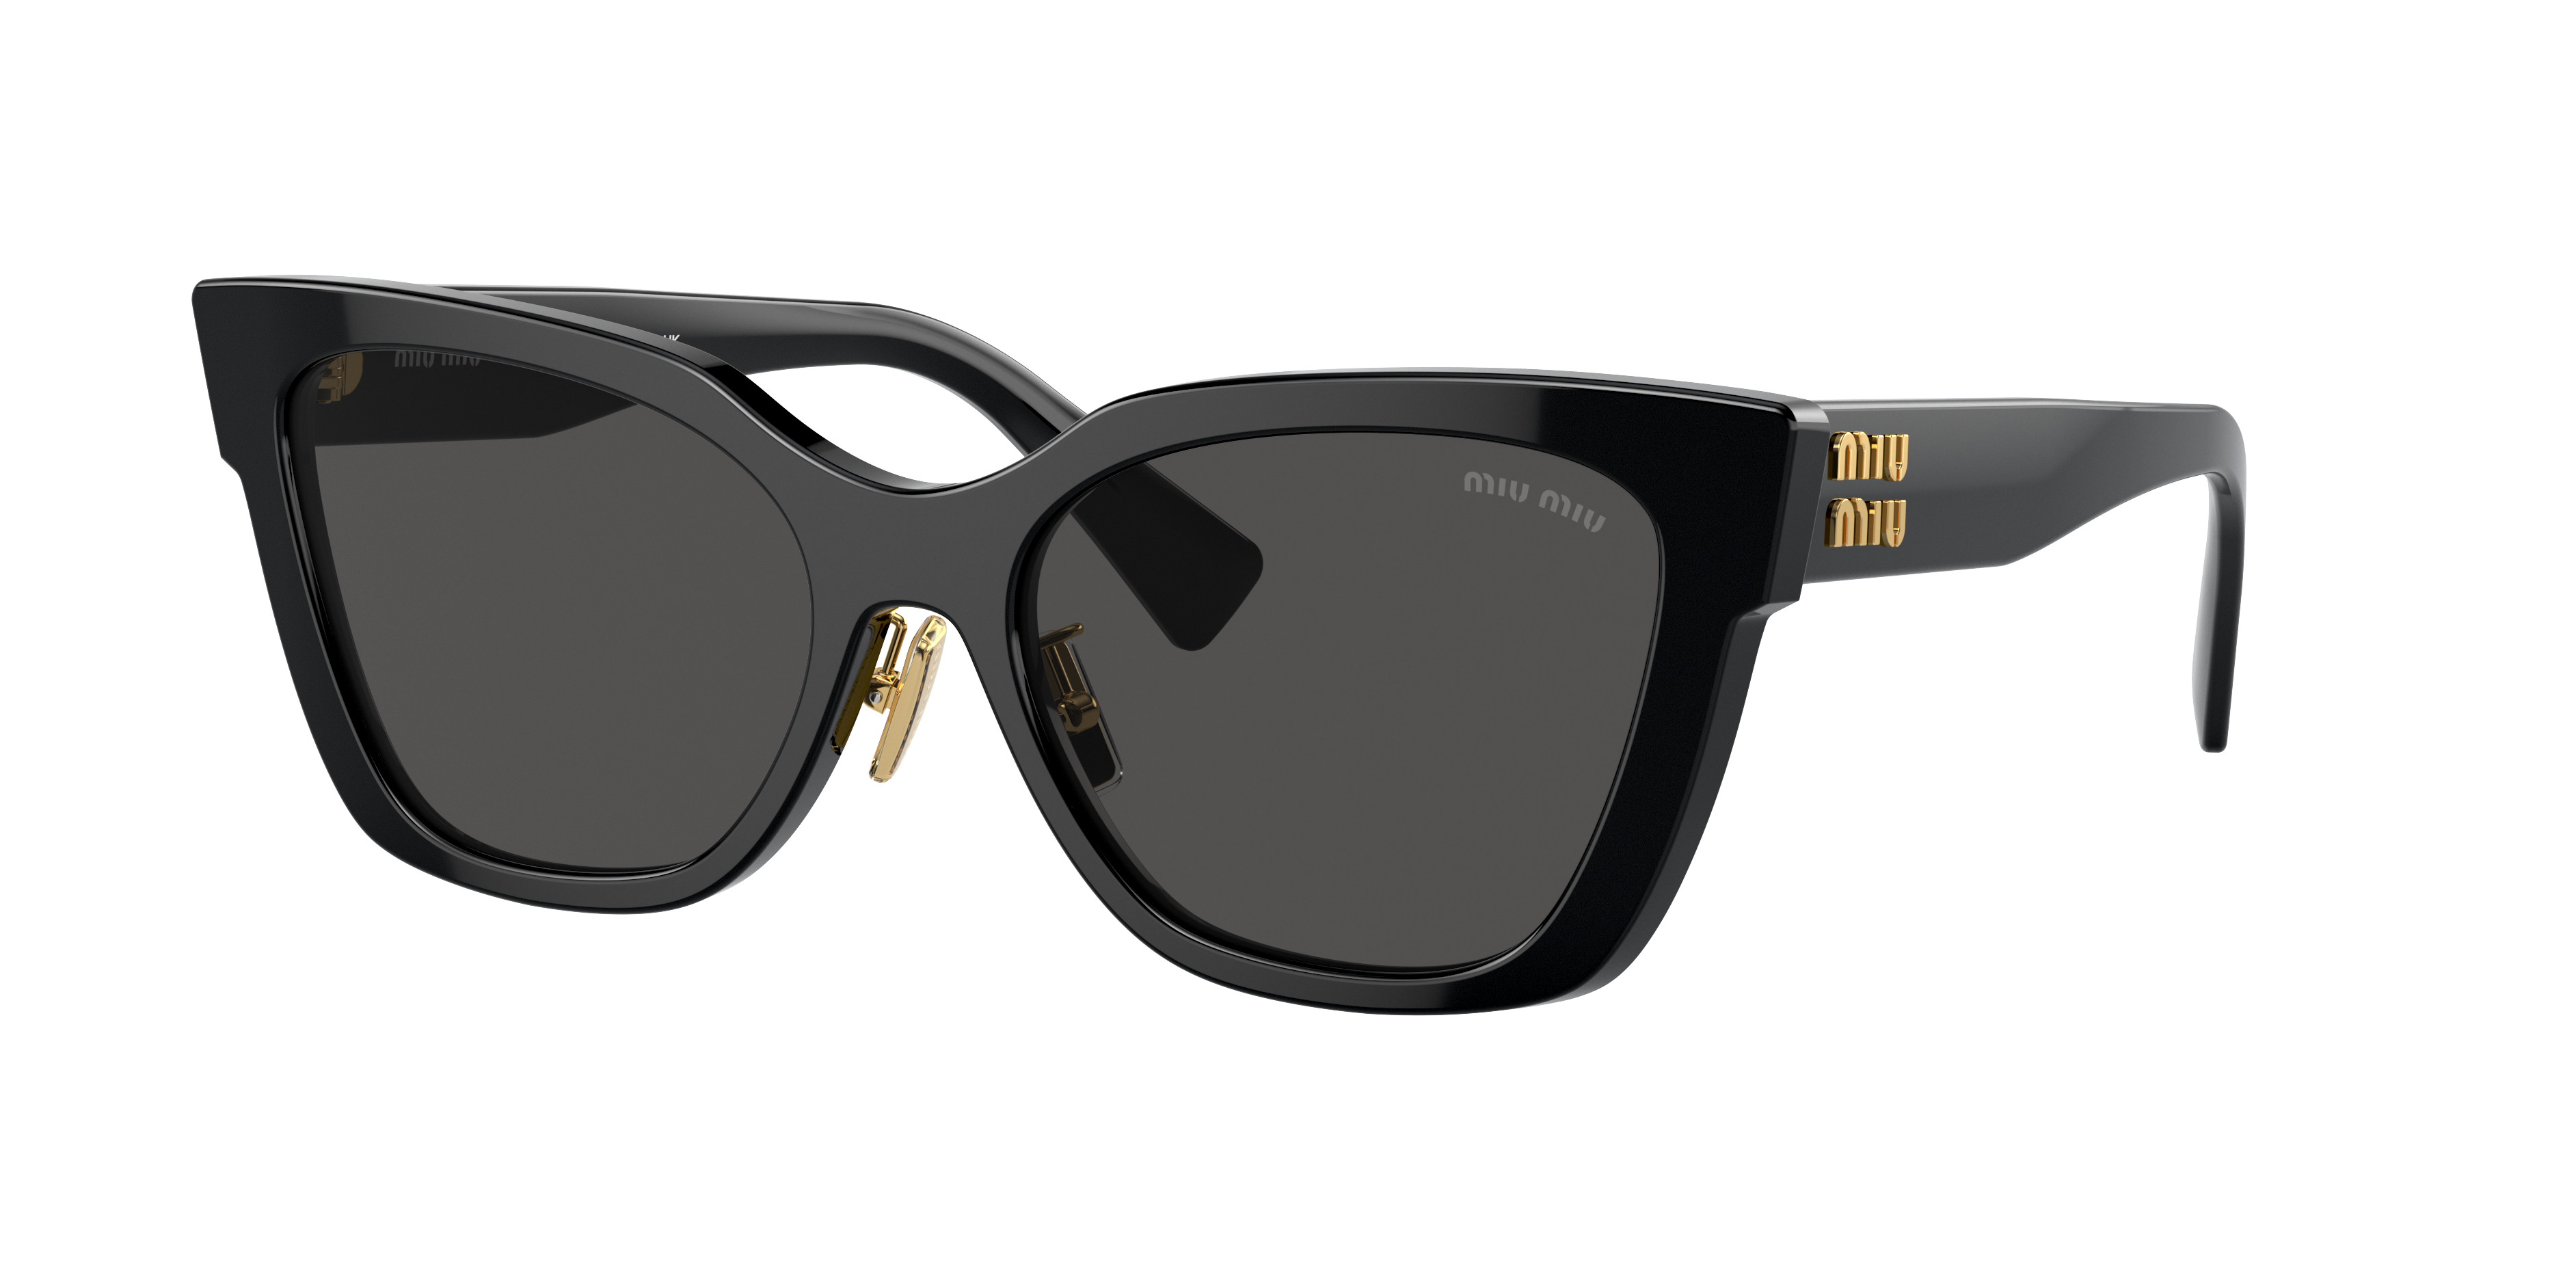 Consulte nosso catálogo de Óculos de Sol Miu Miu Eyewear com diversos modelos e preços para sua escolha.